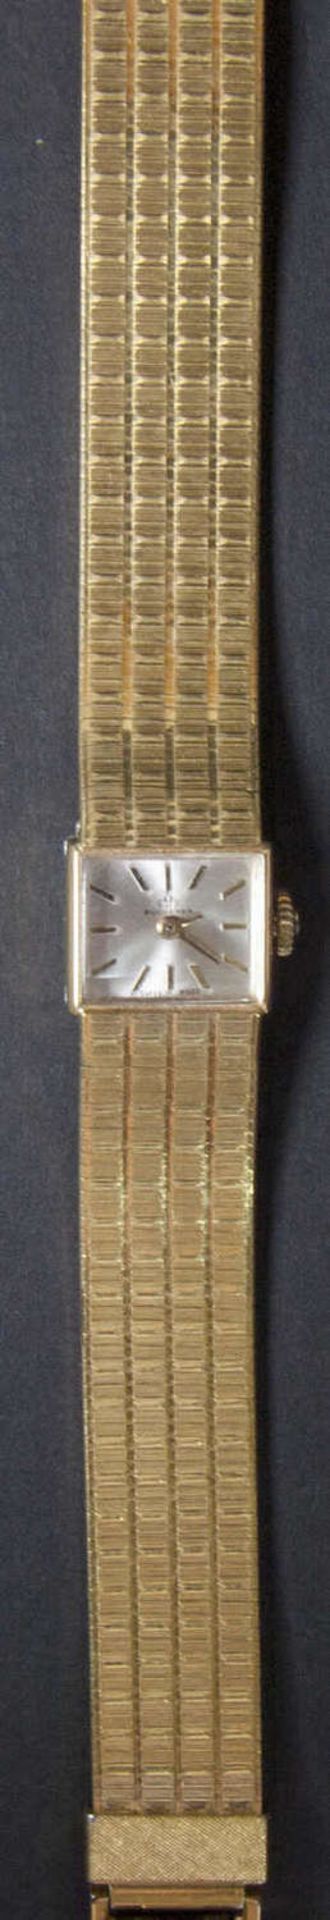 Bucherer Damen - Armbanduhr. Swiss made. Handaufzug. Vergoldet. Länge: ca. 18 cm. Die Uhr läuft